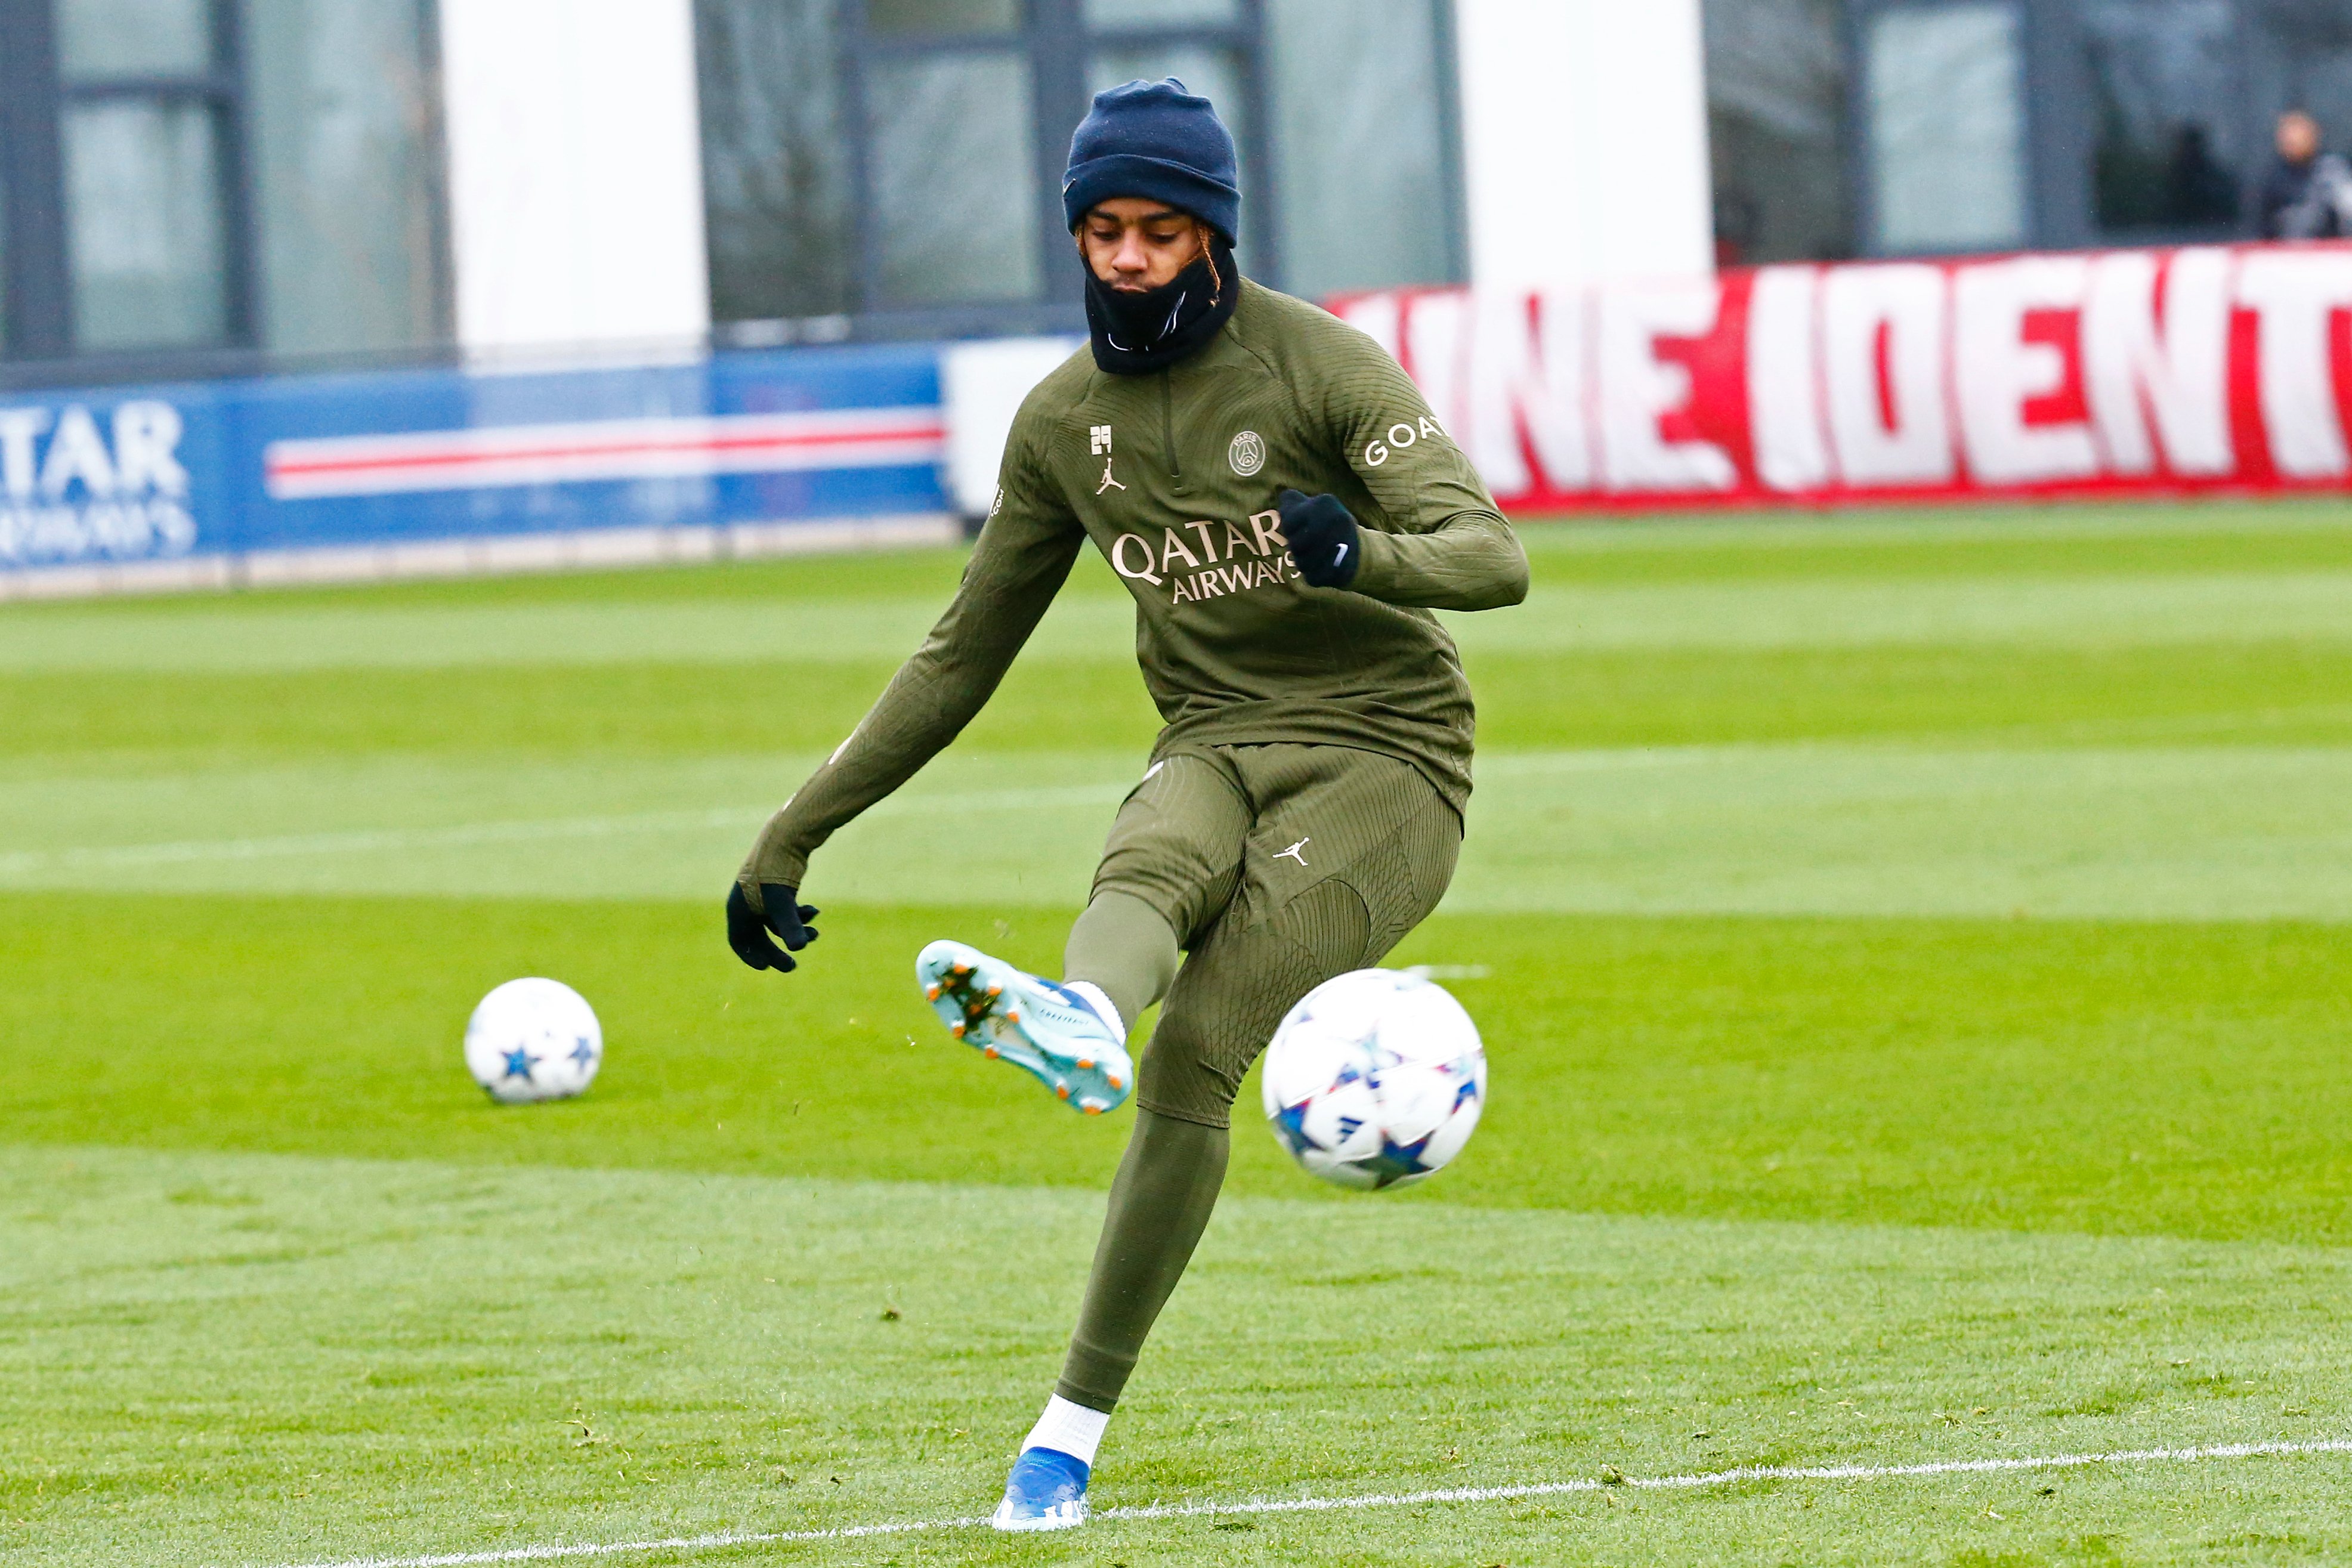 Saint-Germain training